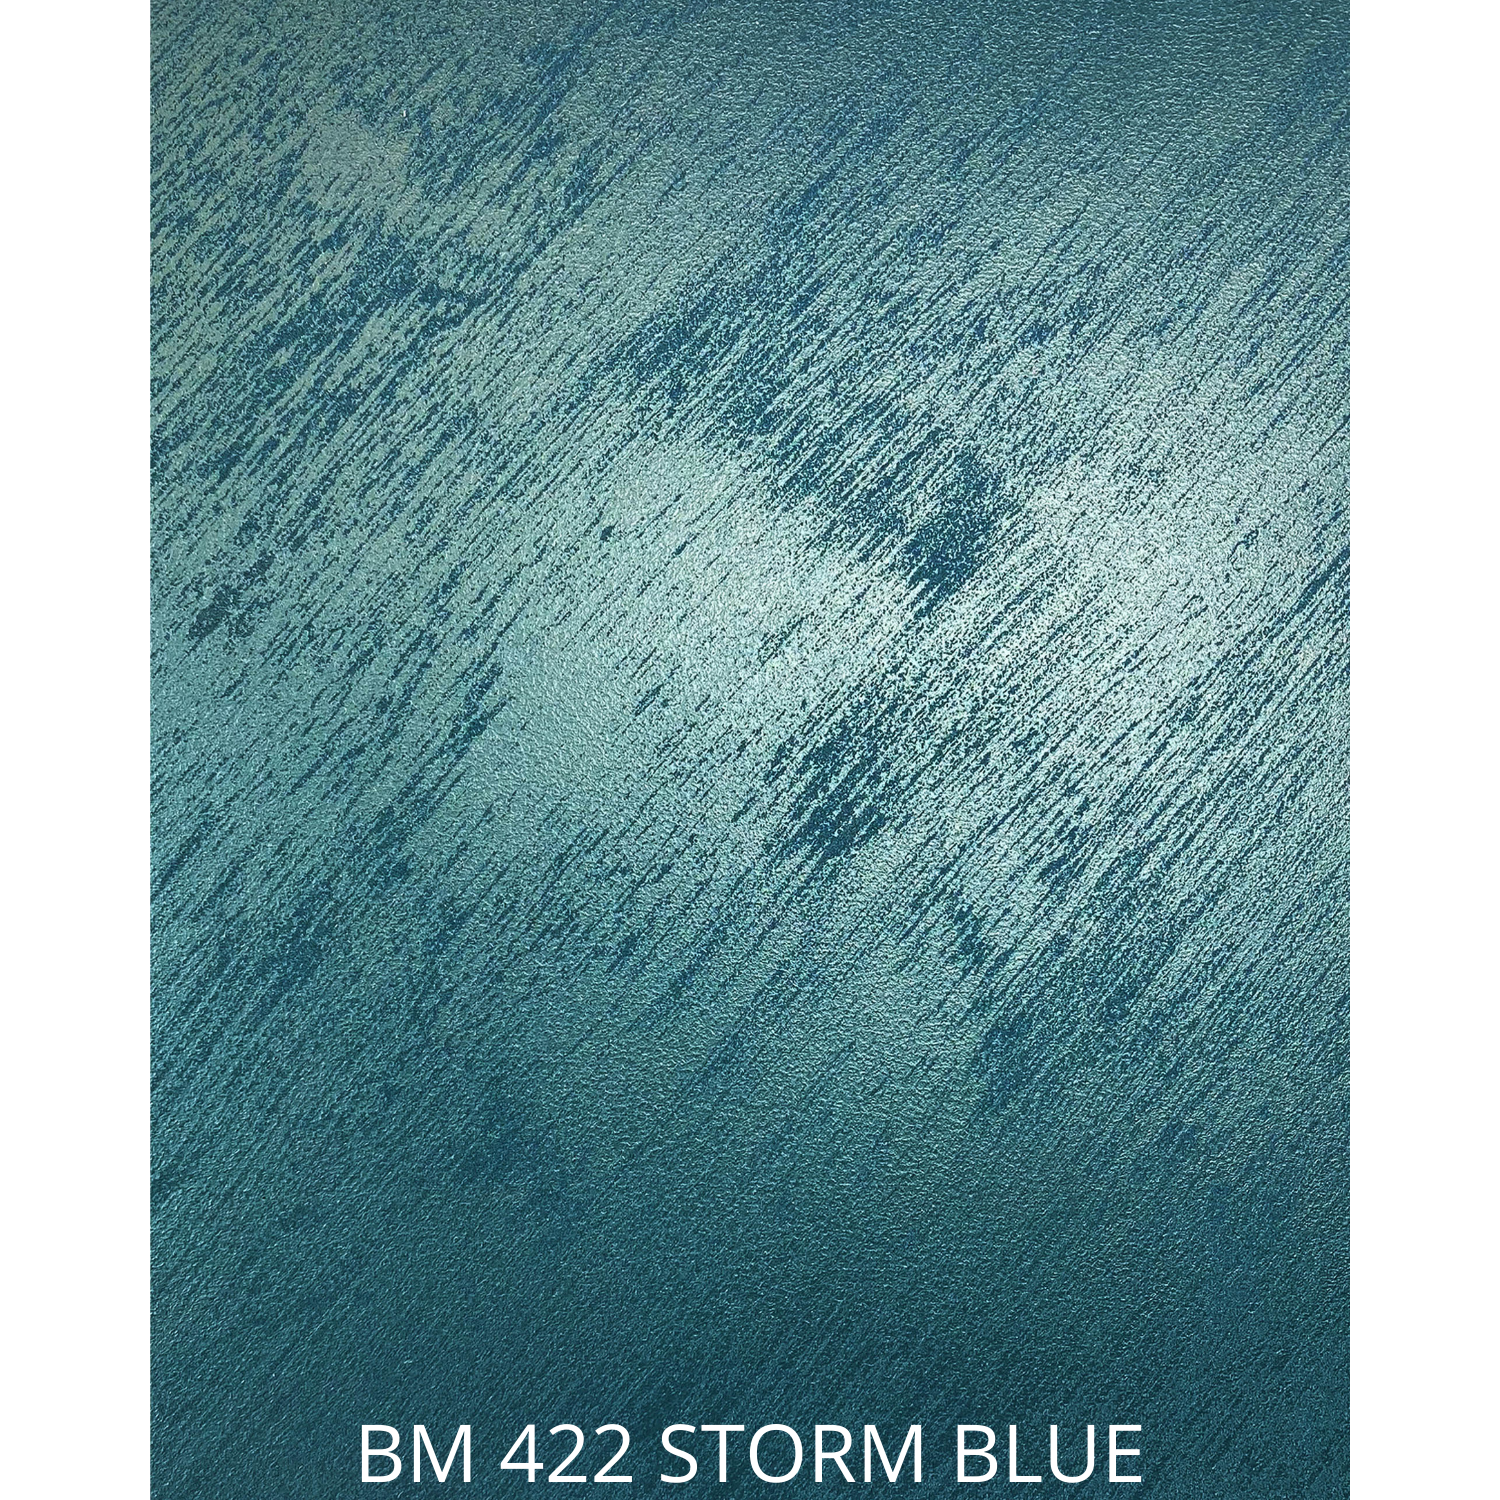 BM 422 STORM BLUE